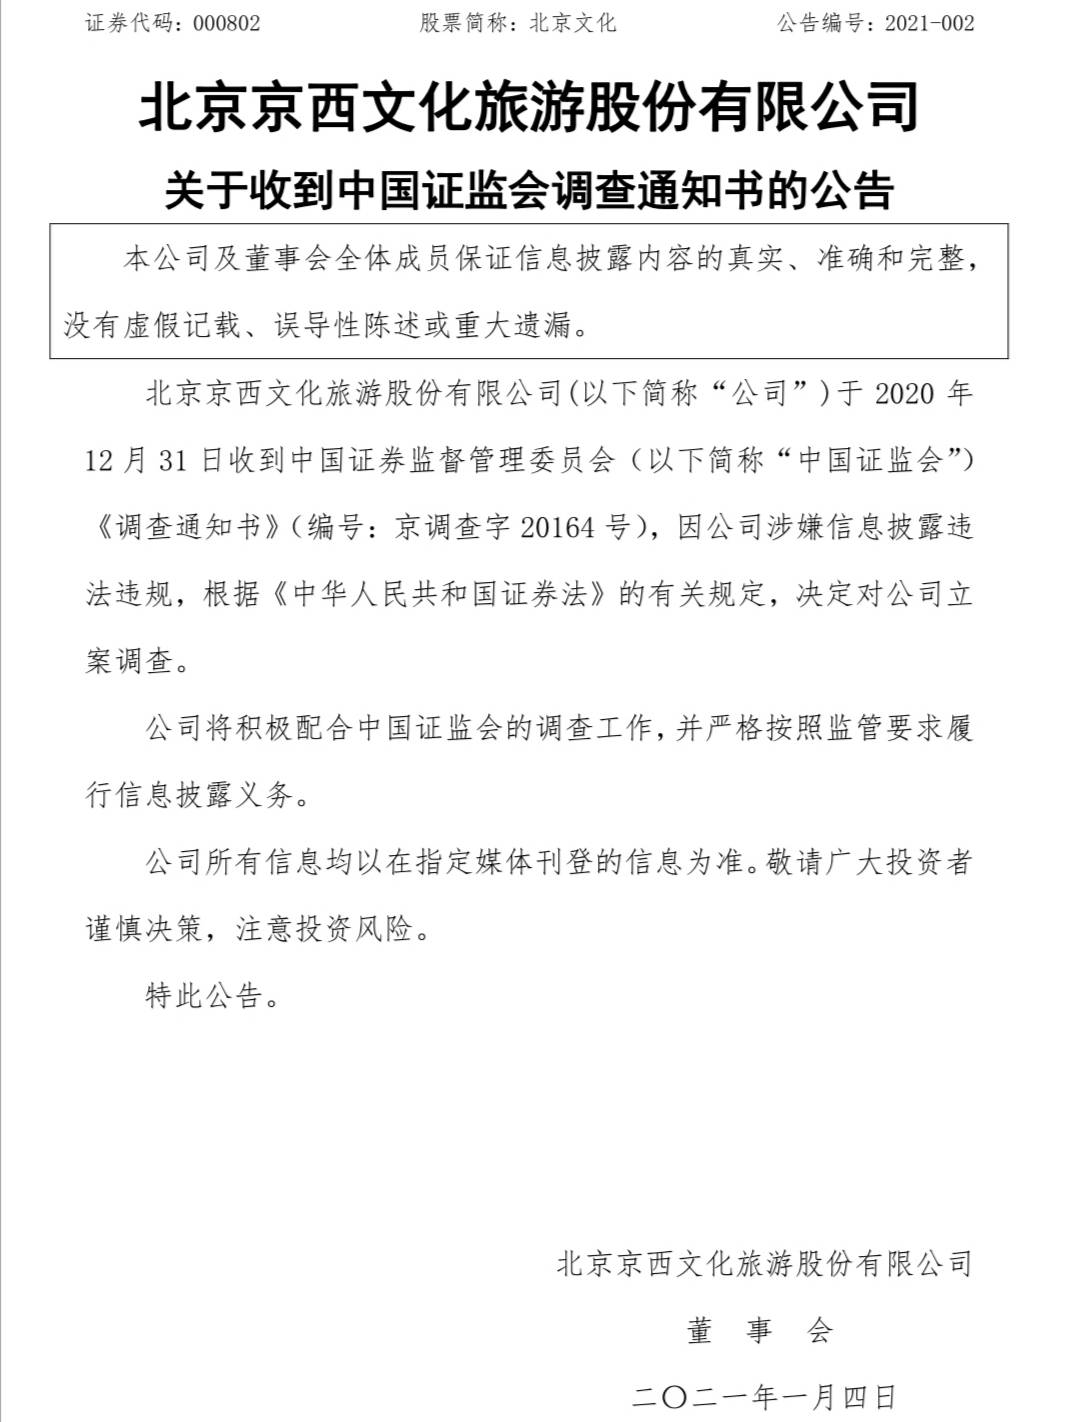 注意！《战狼2》出品方北京文化因涉嫌信息披露违法违规被立案调查 